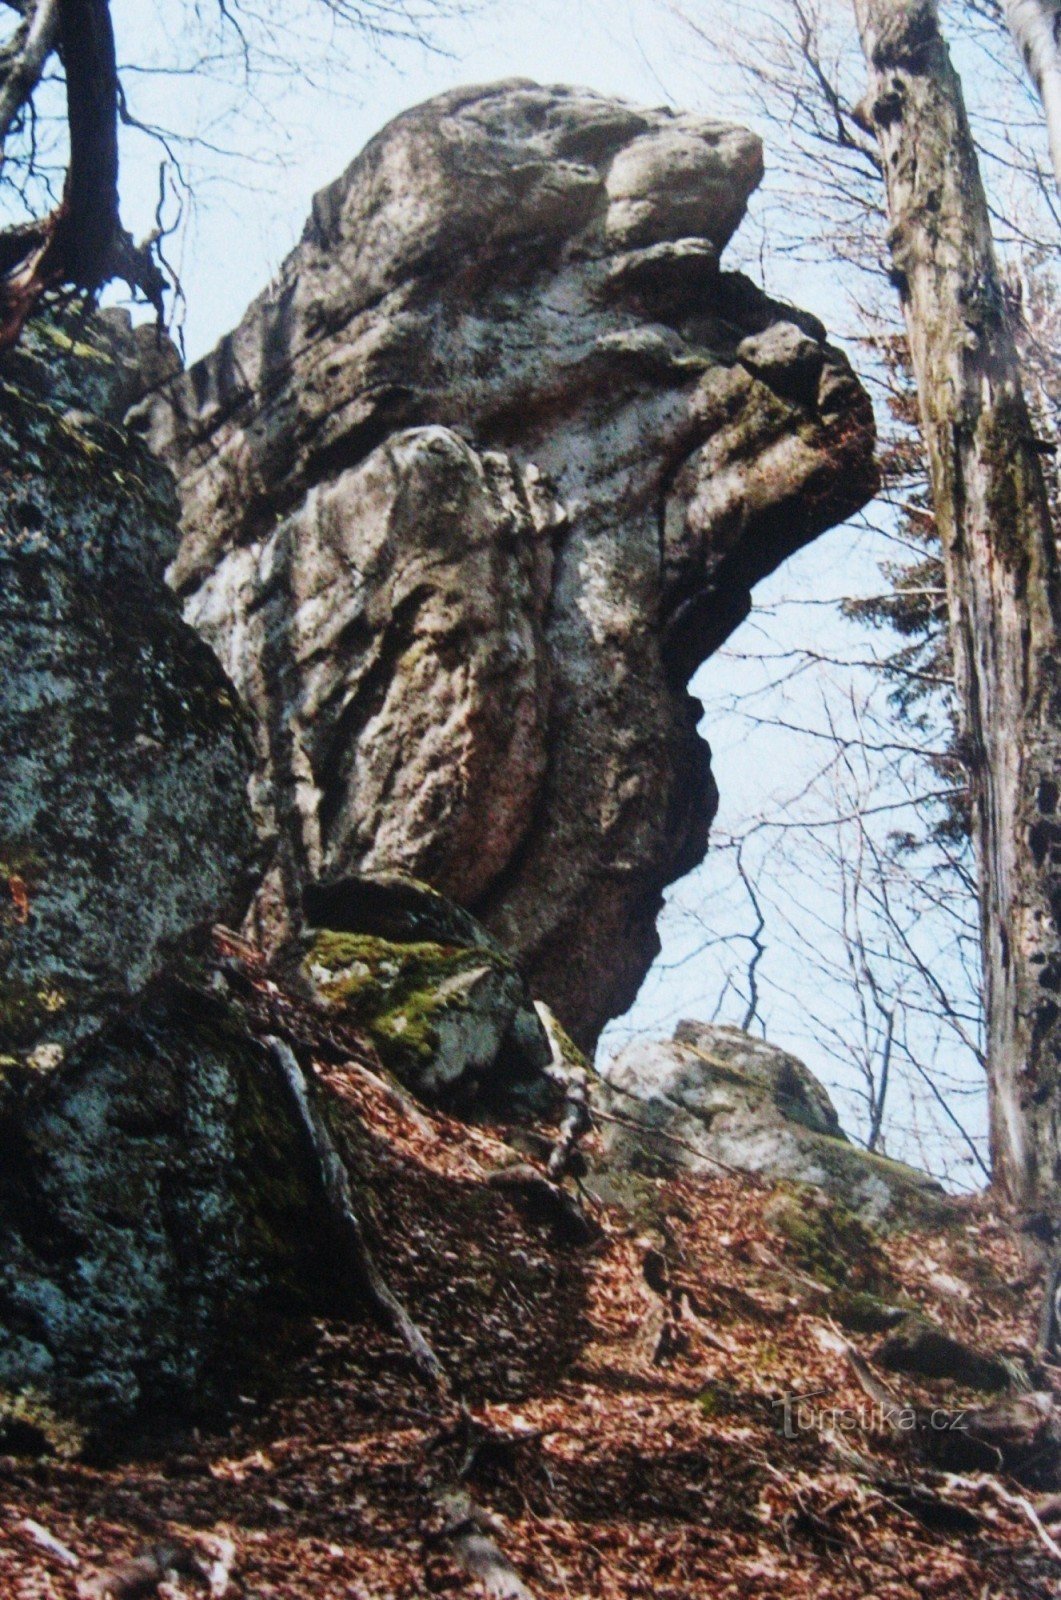 Rocks of Hostýnské vrchy - 12. Čerňava και Smrduta